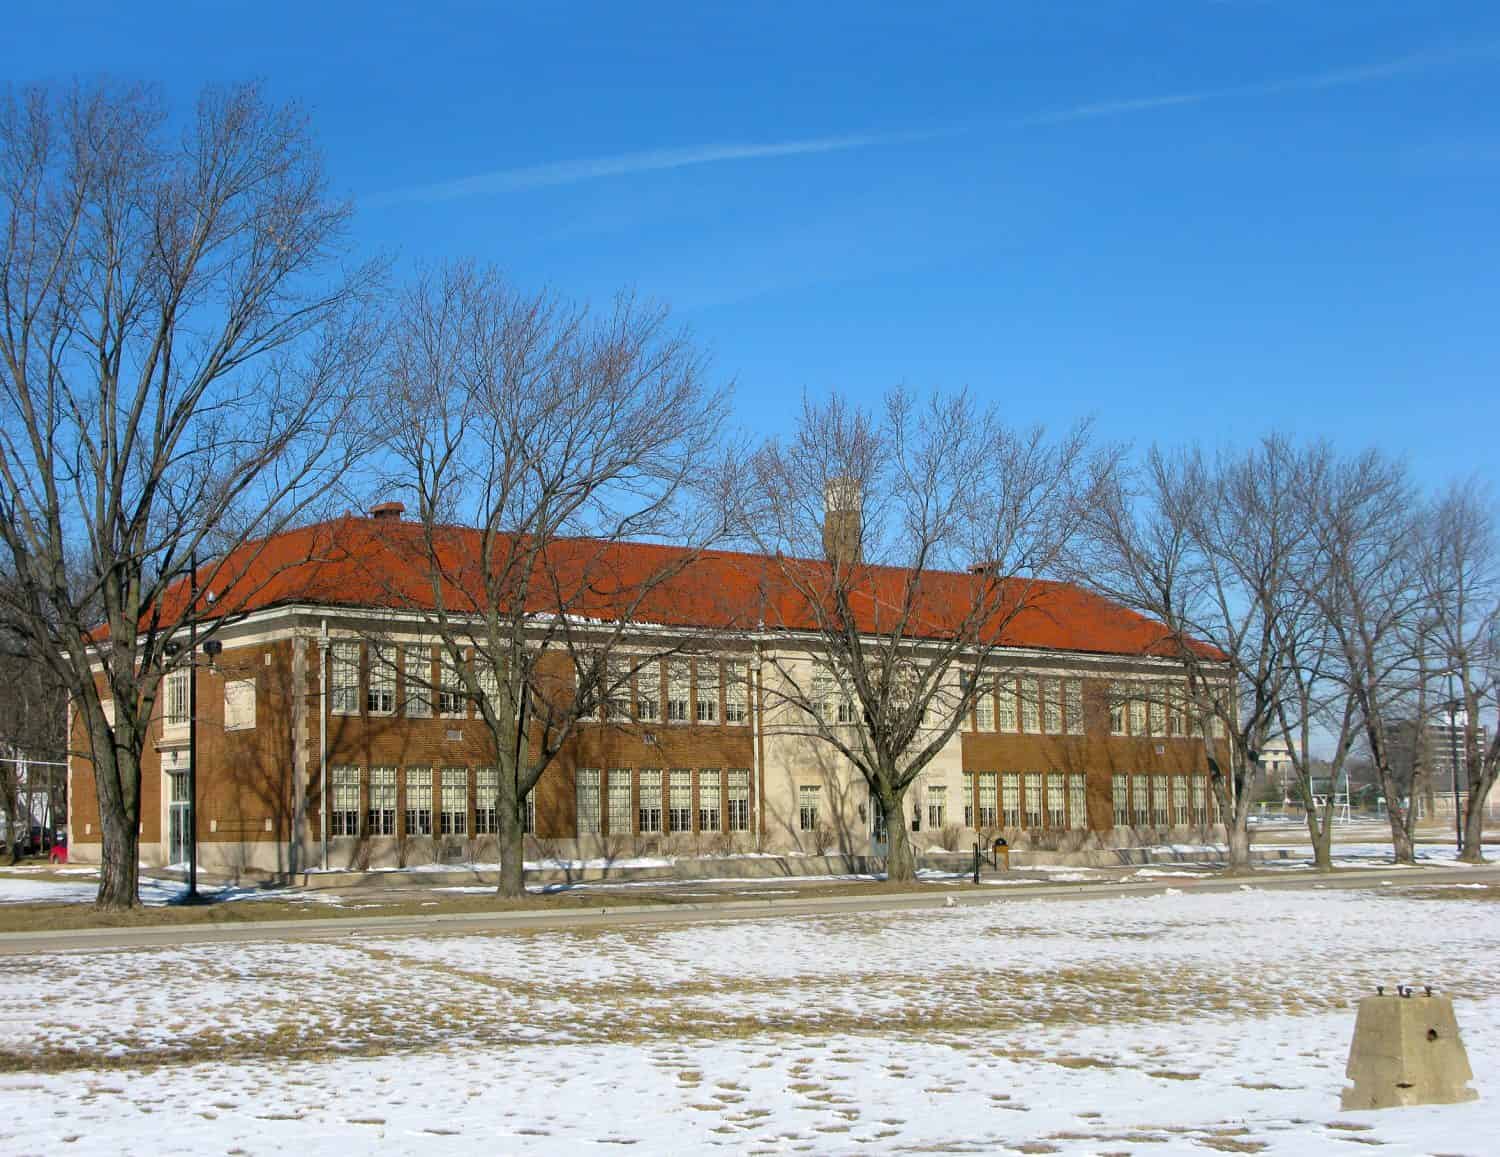 Monroe Elementary School, una delle quattro ex scuole elementari segregate per bambini afroamericani a Topeka, USA, che ora fa parte del sito storico nazionale Brown v. Board of Education